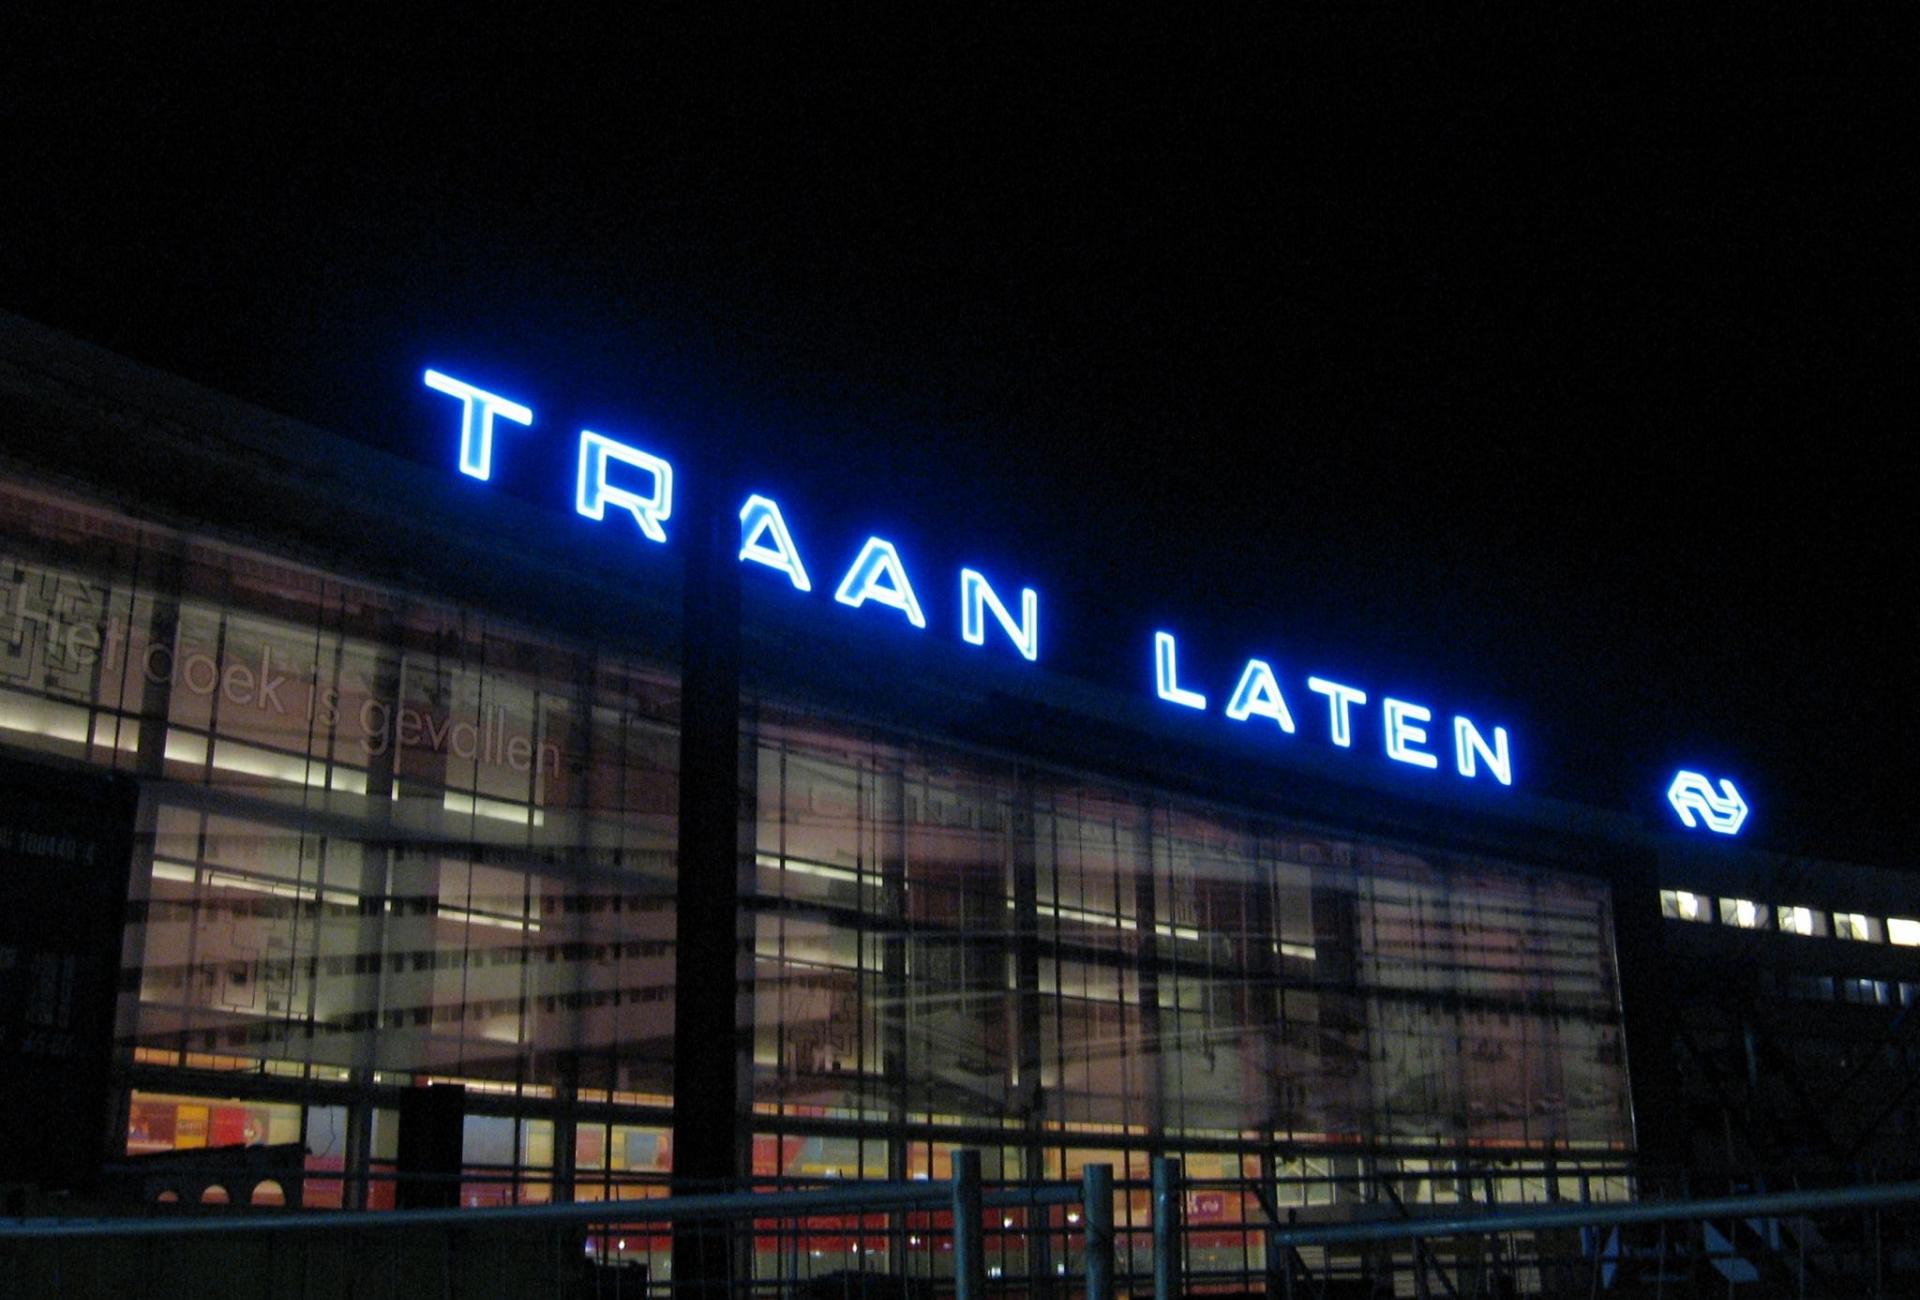 Traan Laten Rotterdam Centraal